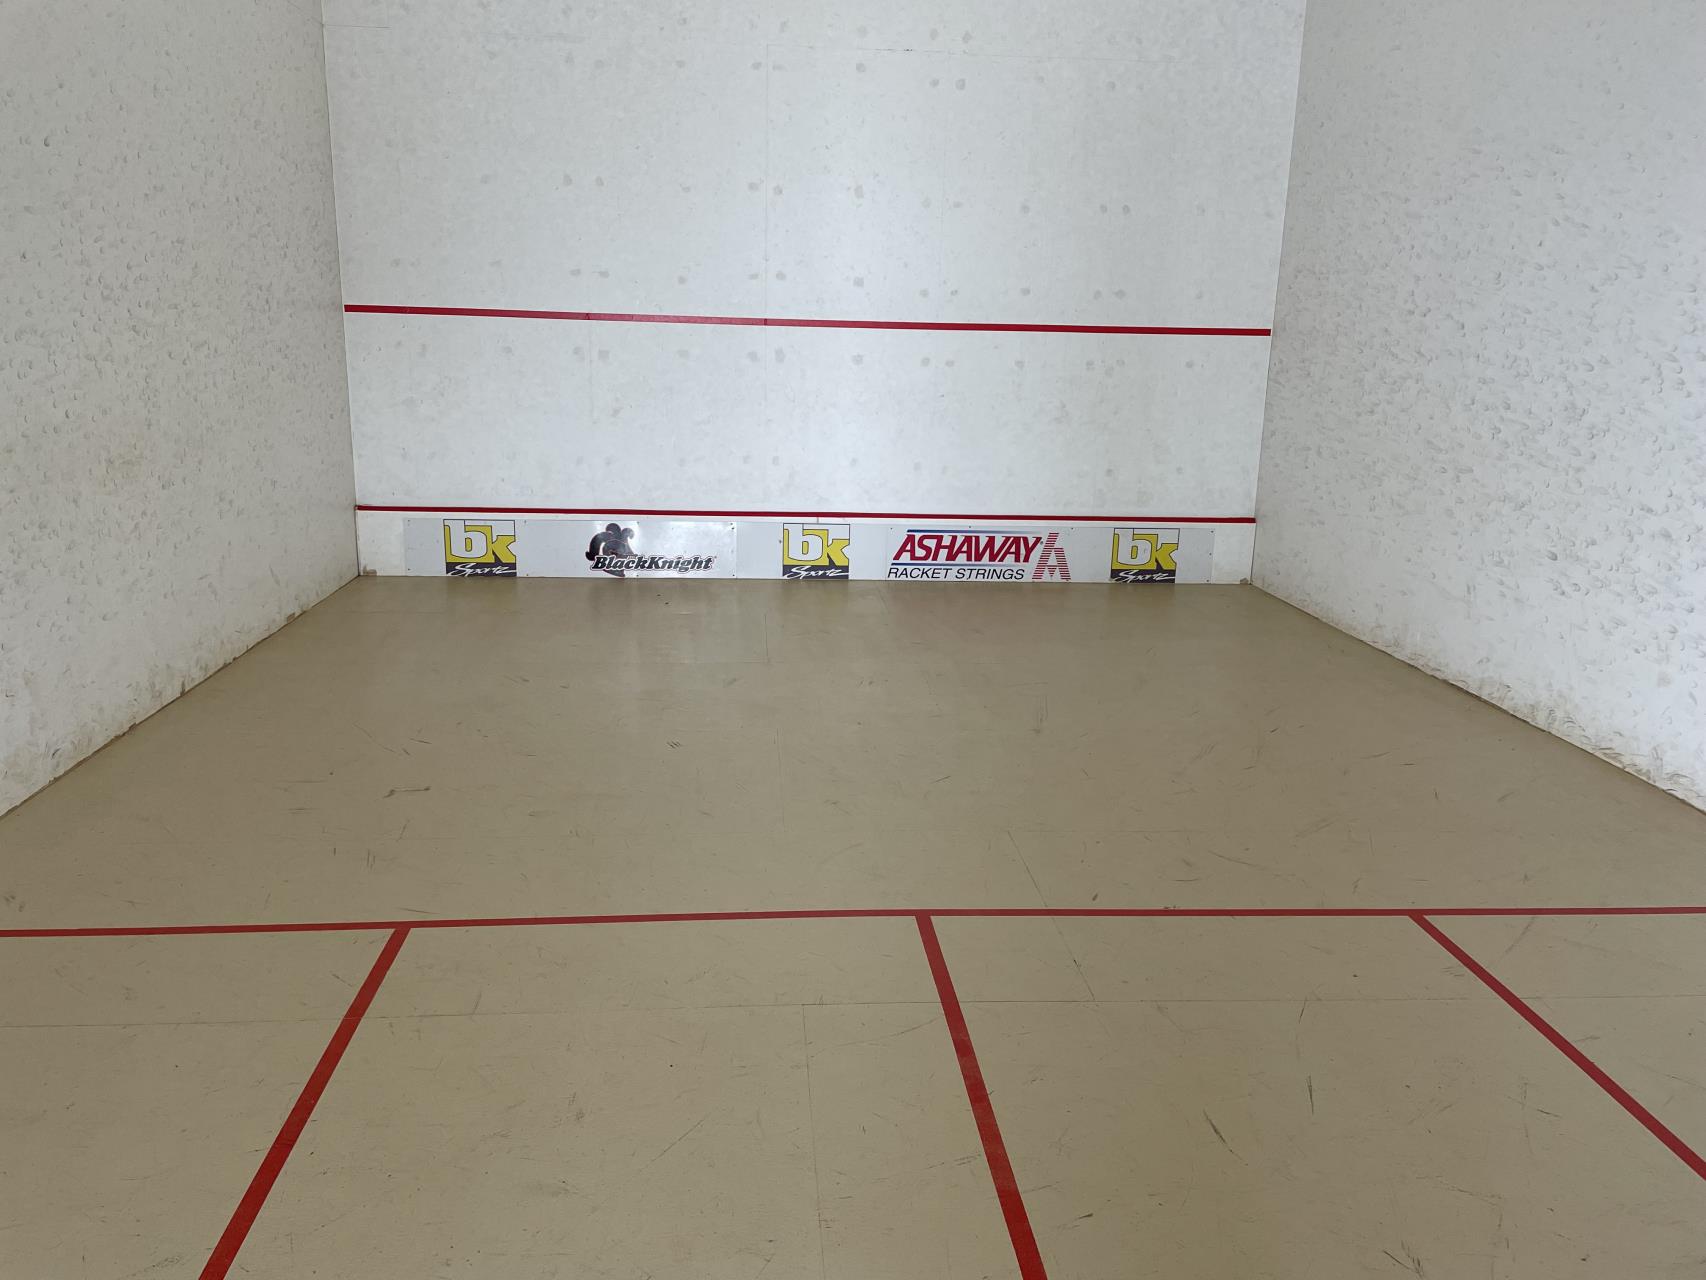 Squash Court Image